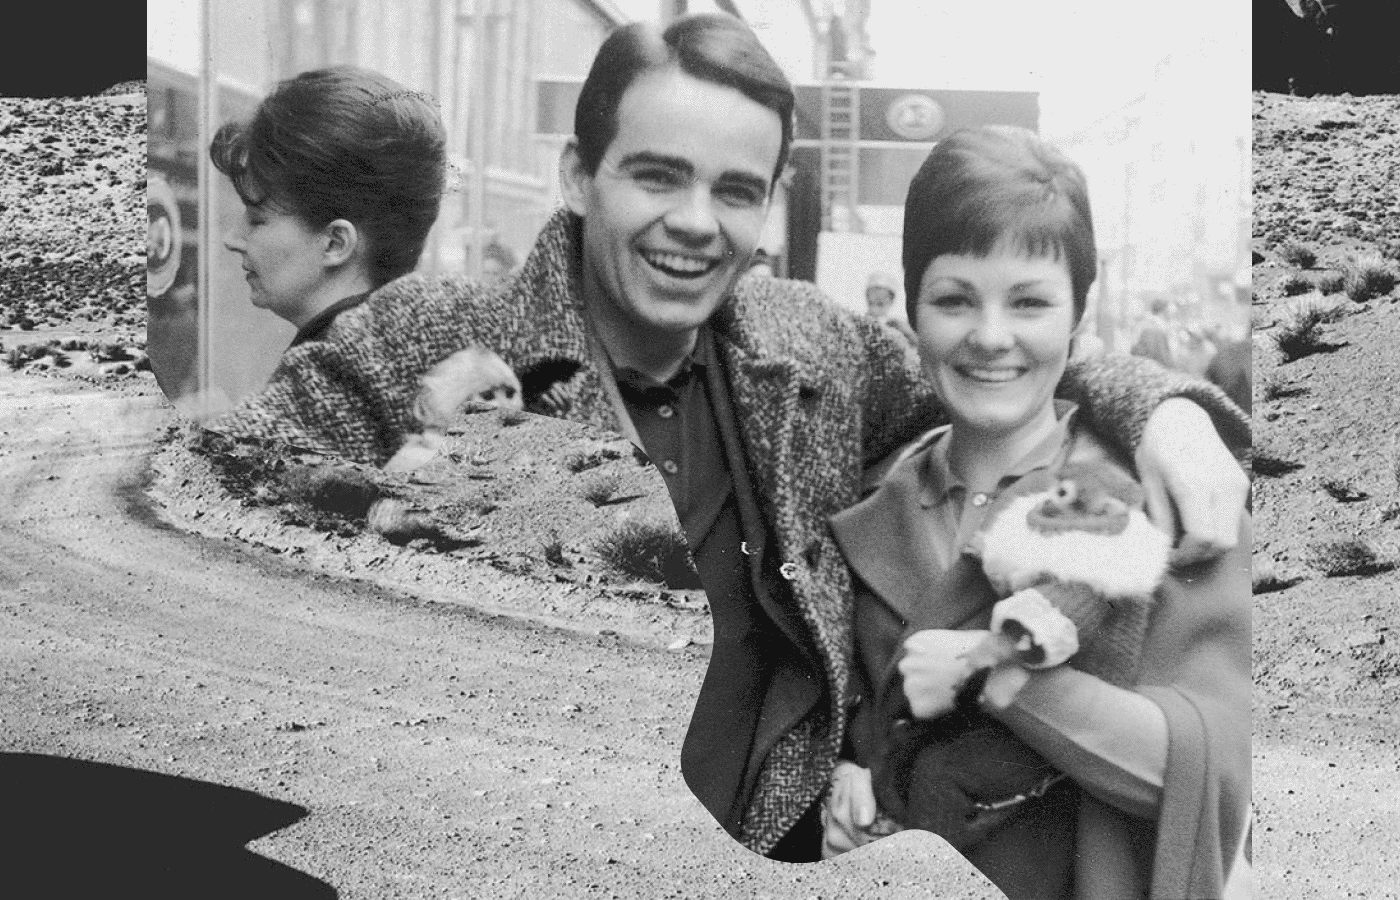 Кормак Маккарти с будущей женой Анни Делайл, 1966. Источник: knoxnews.com. Коллаж: Захар Шлимаков / Букмейт